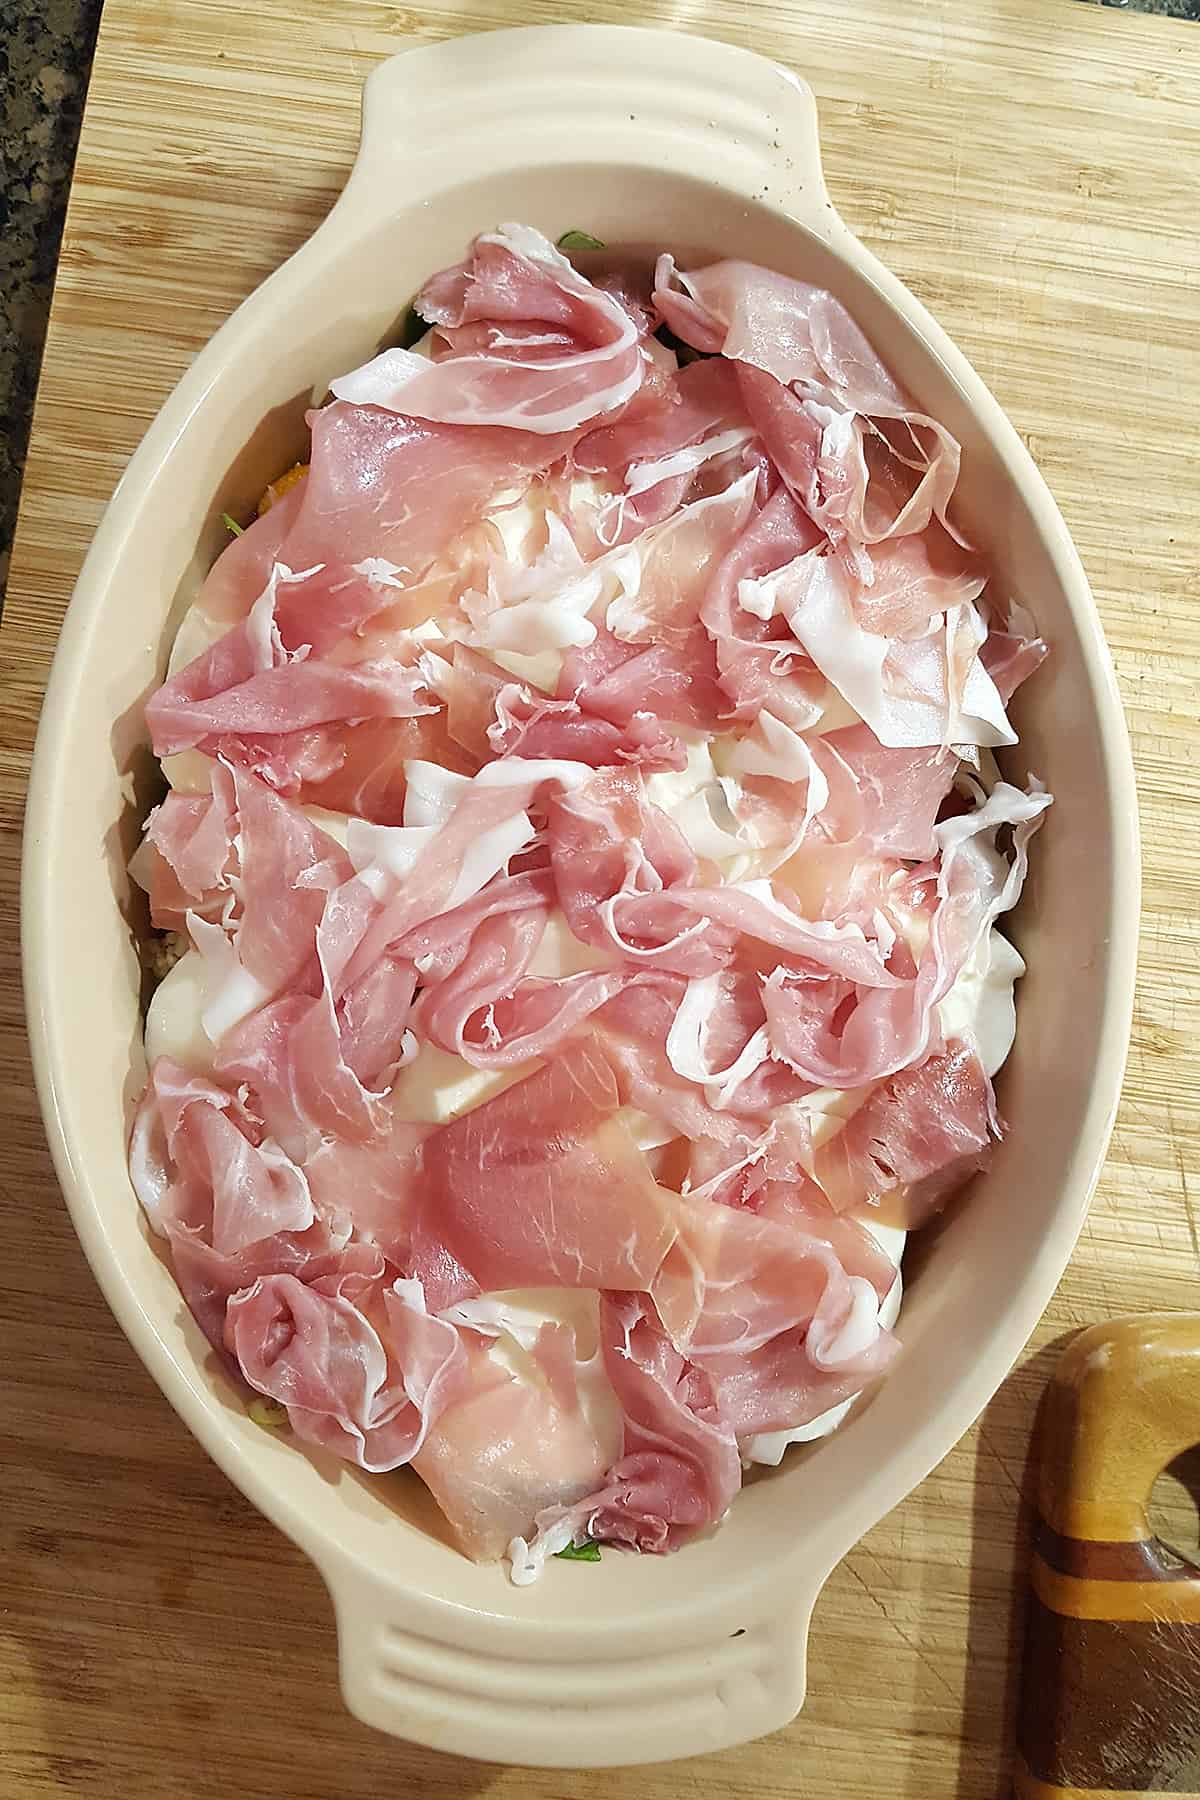 Prosciutto added over mozzarella in the baking dish.